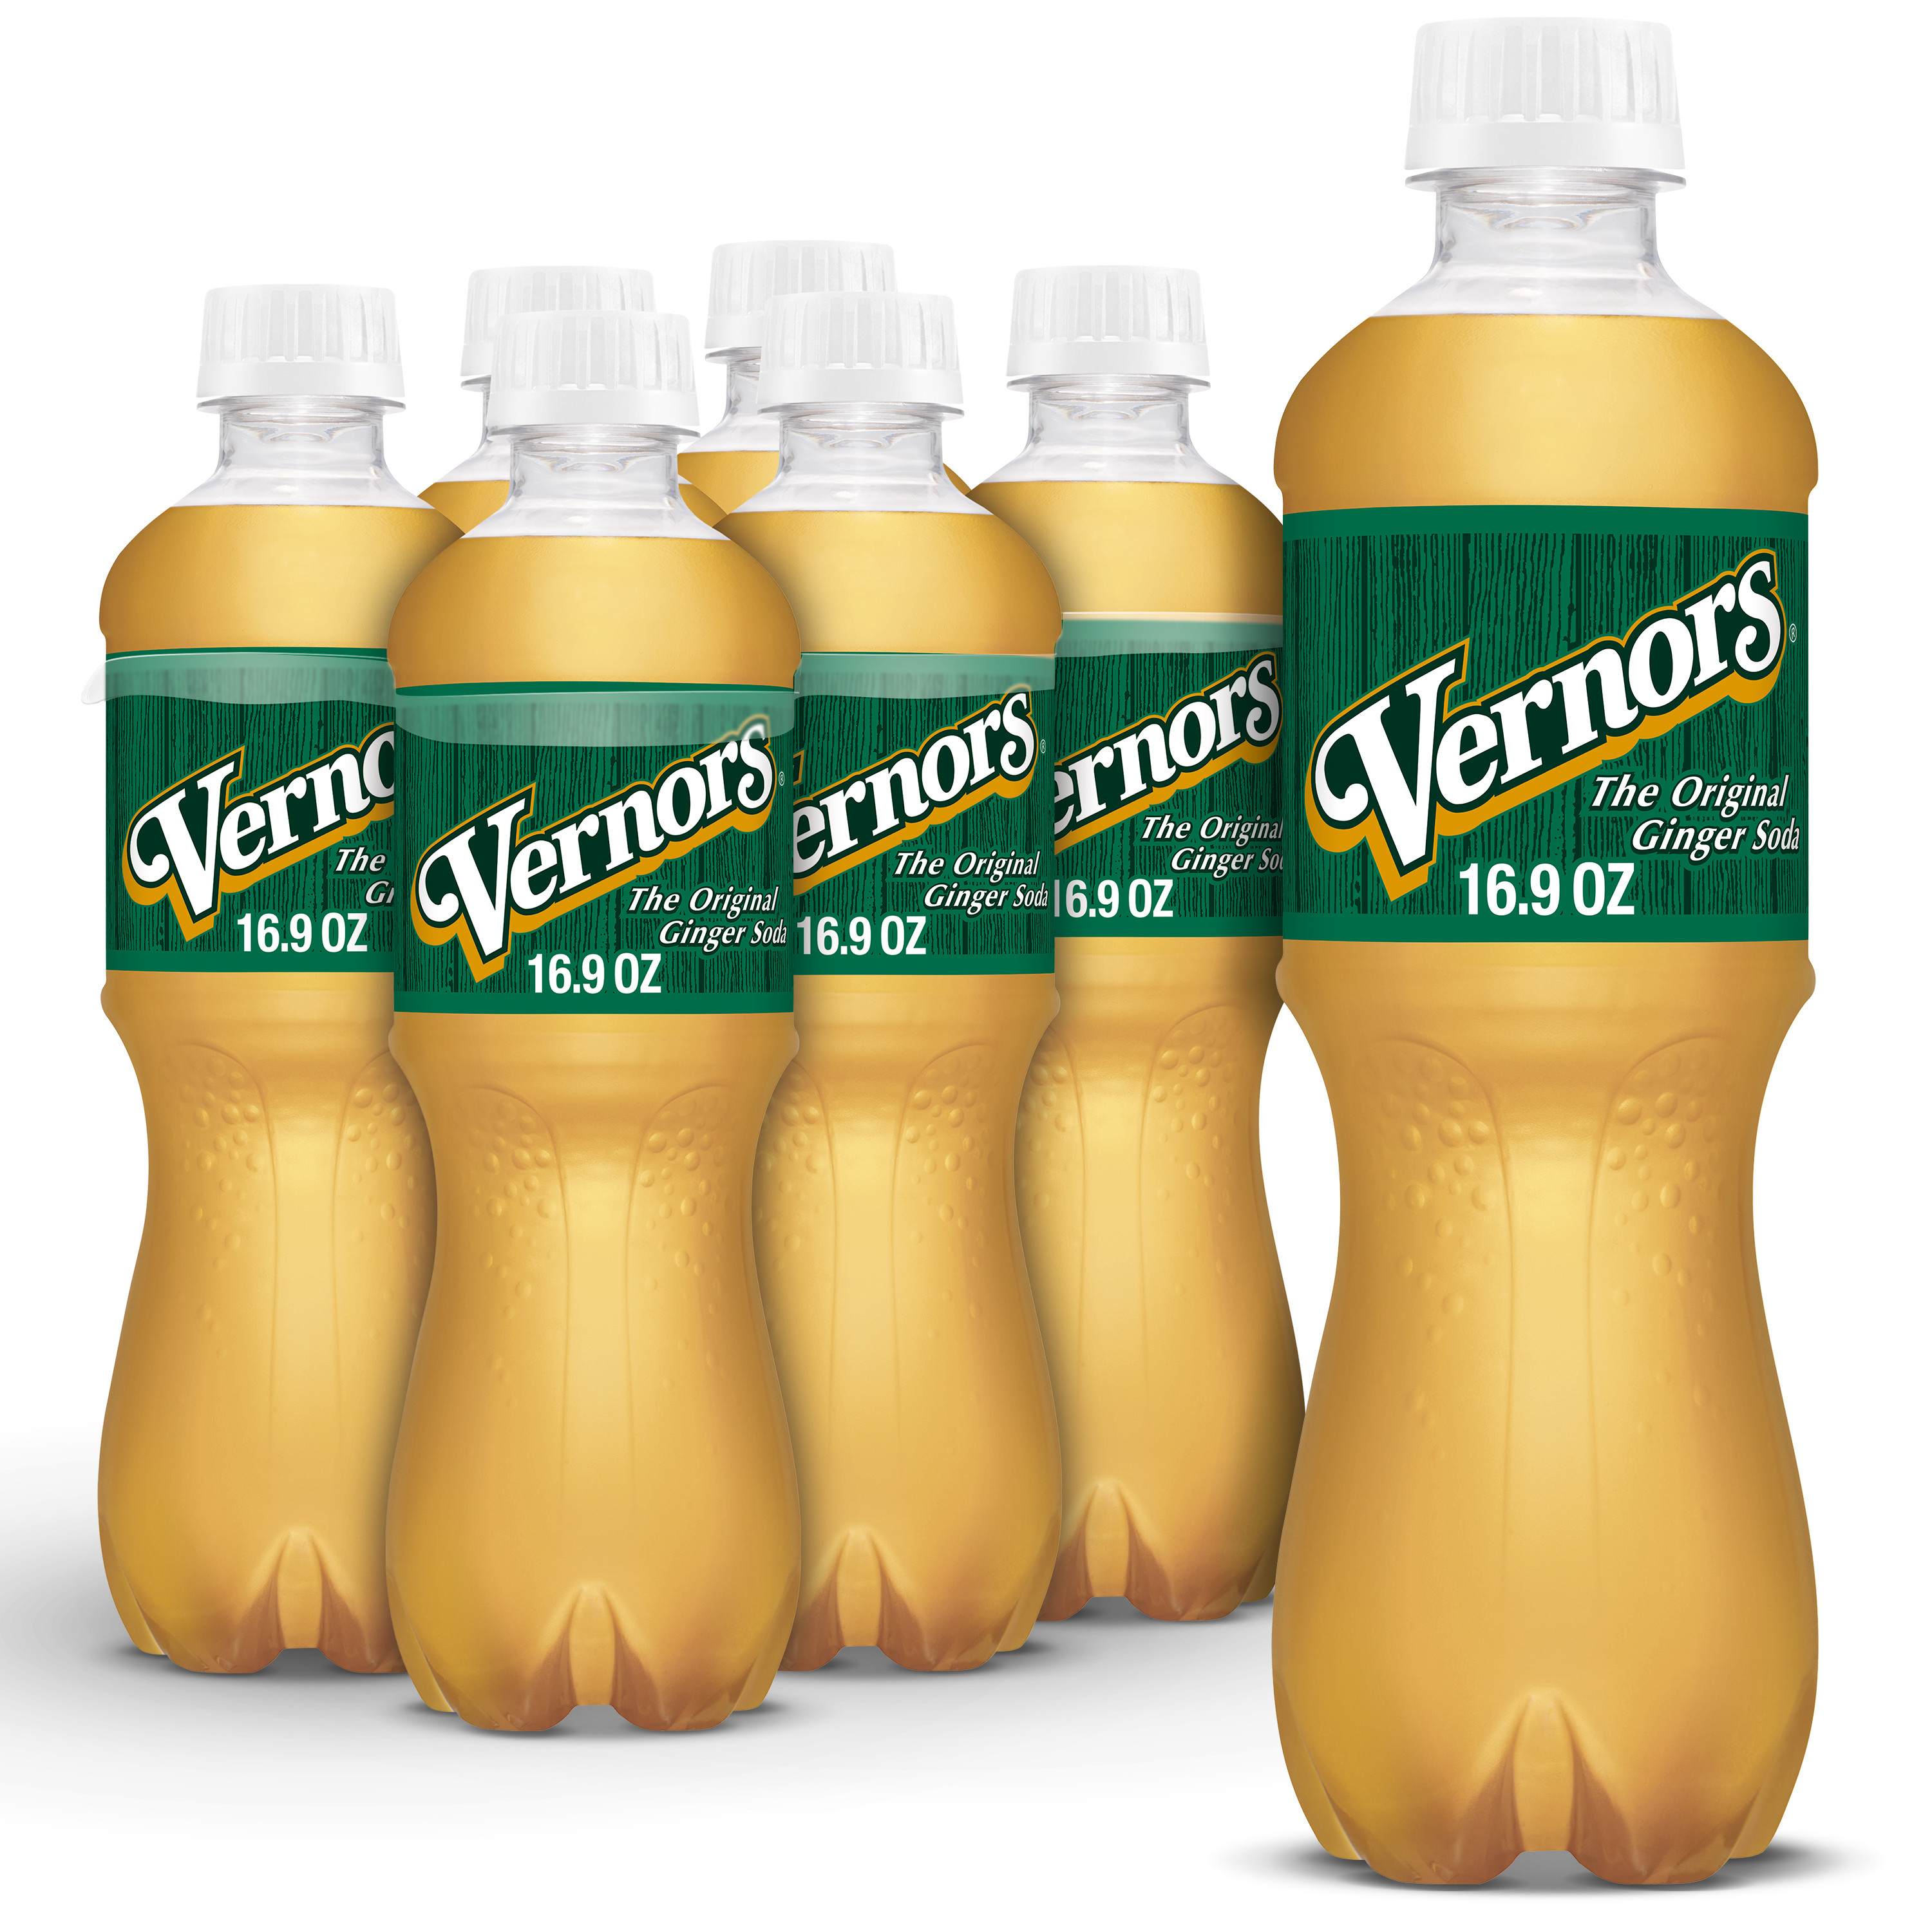 Vernors Caffeine Free Ginger Ale Soda Pop, 16.9 fl oz, 6 Pack Bottles - image 1 of 13